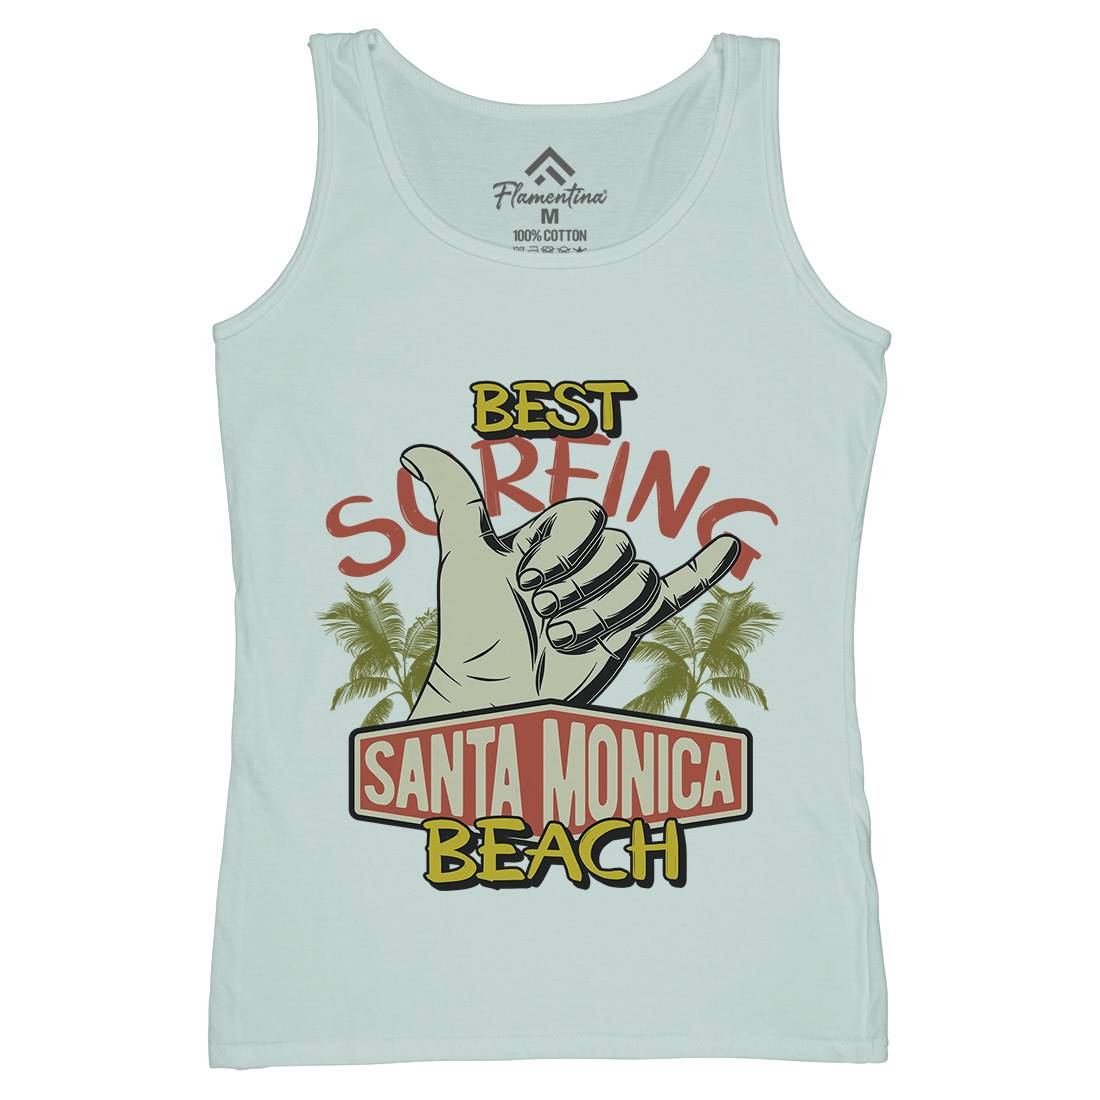 Best Surfing Beach Womens Organic Tank Top Vest Surf D909